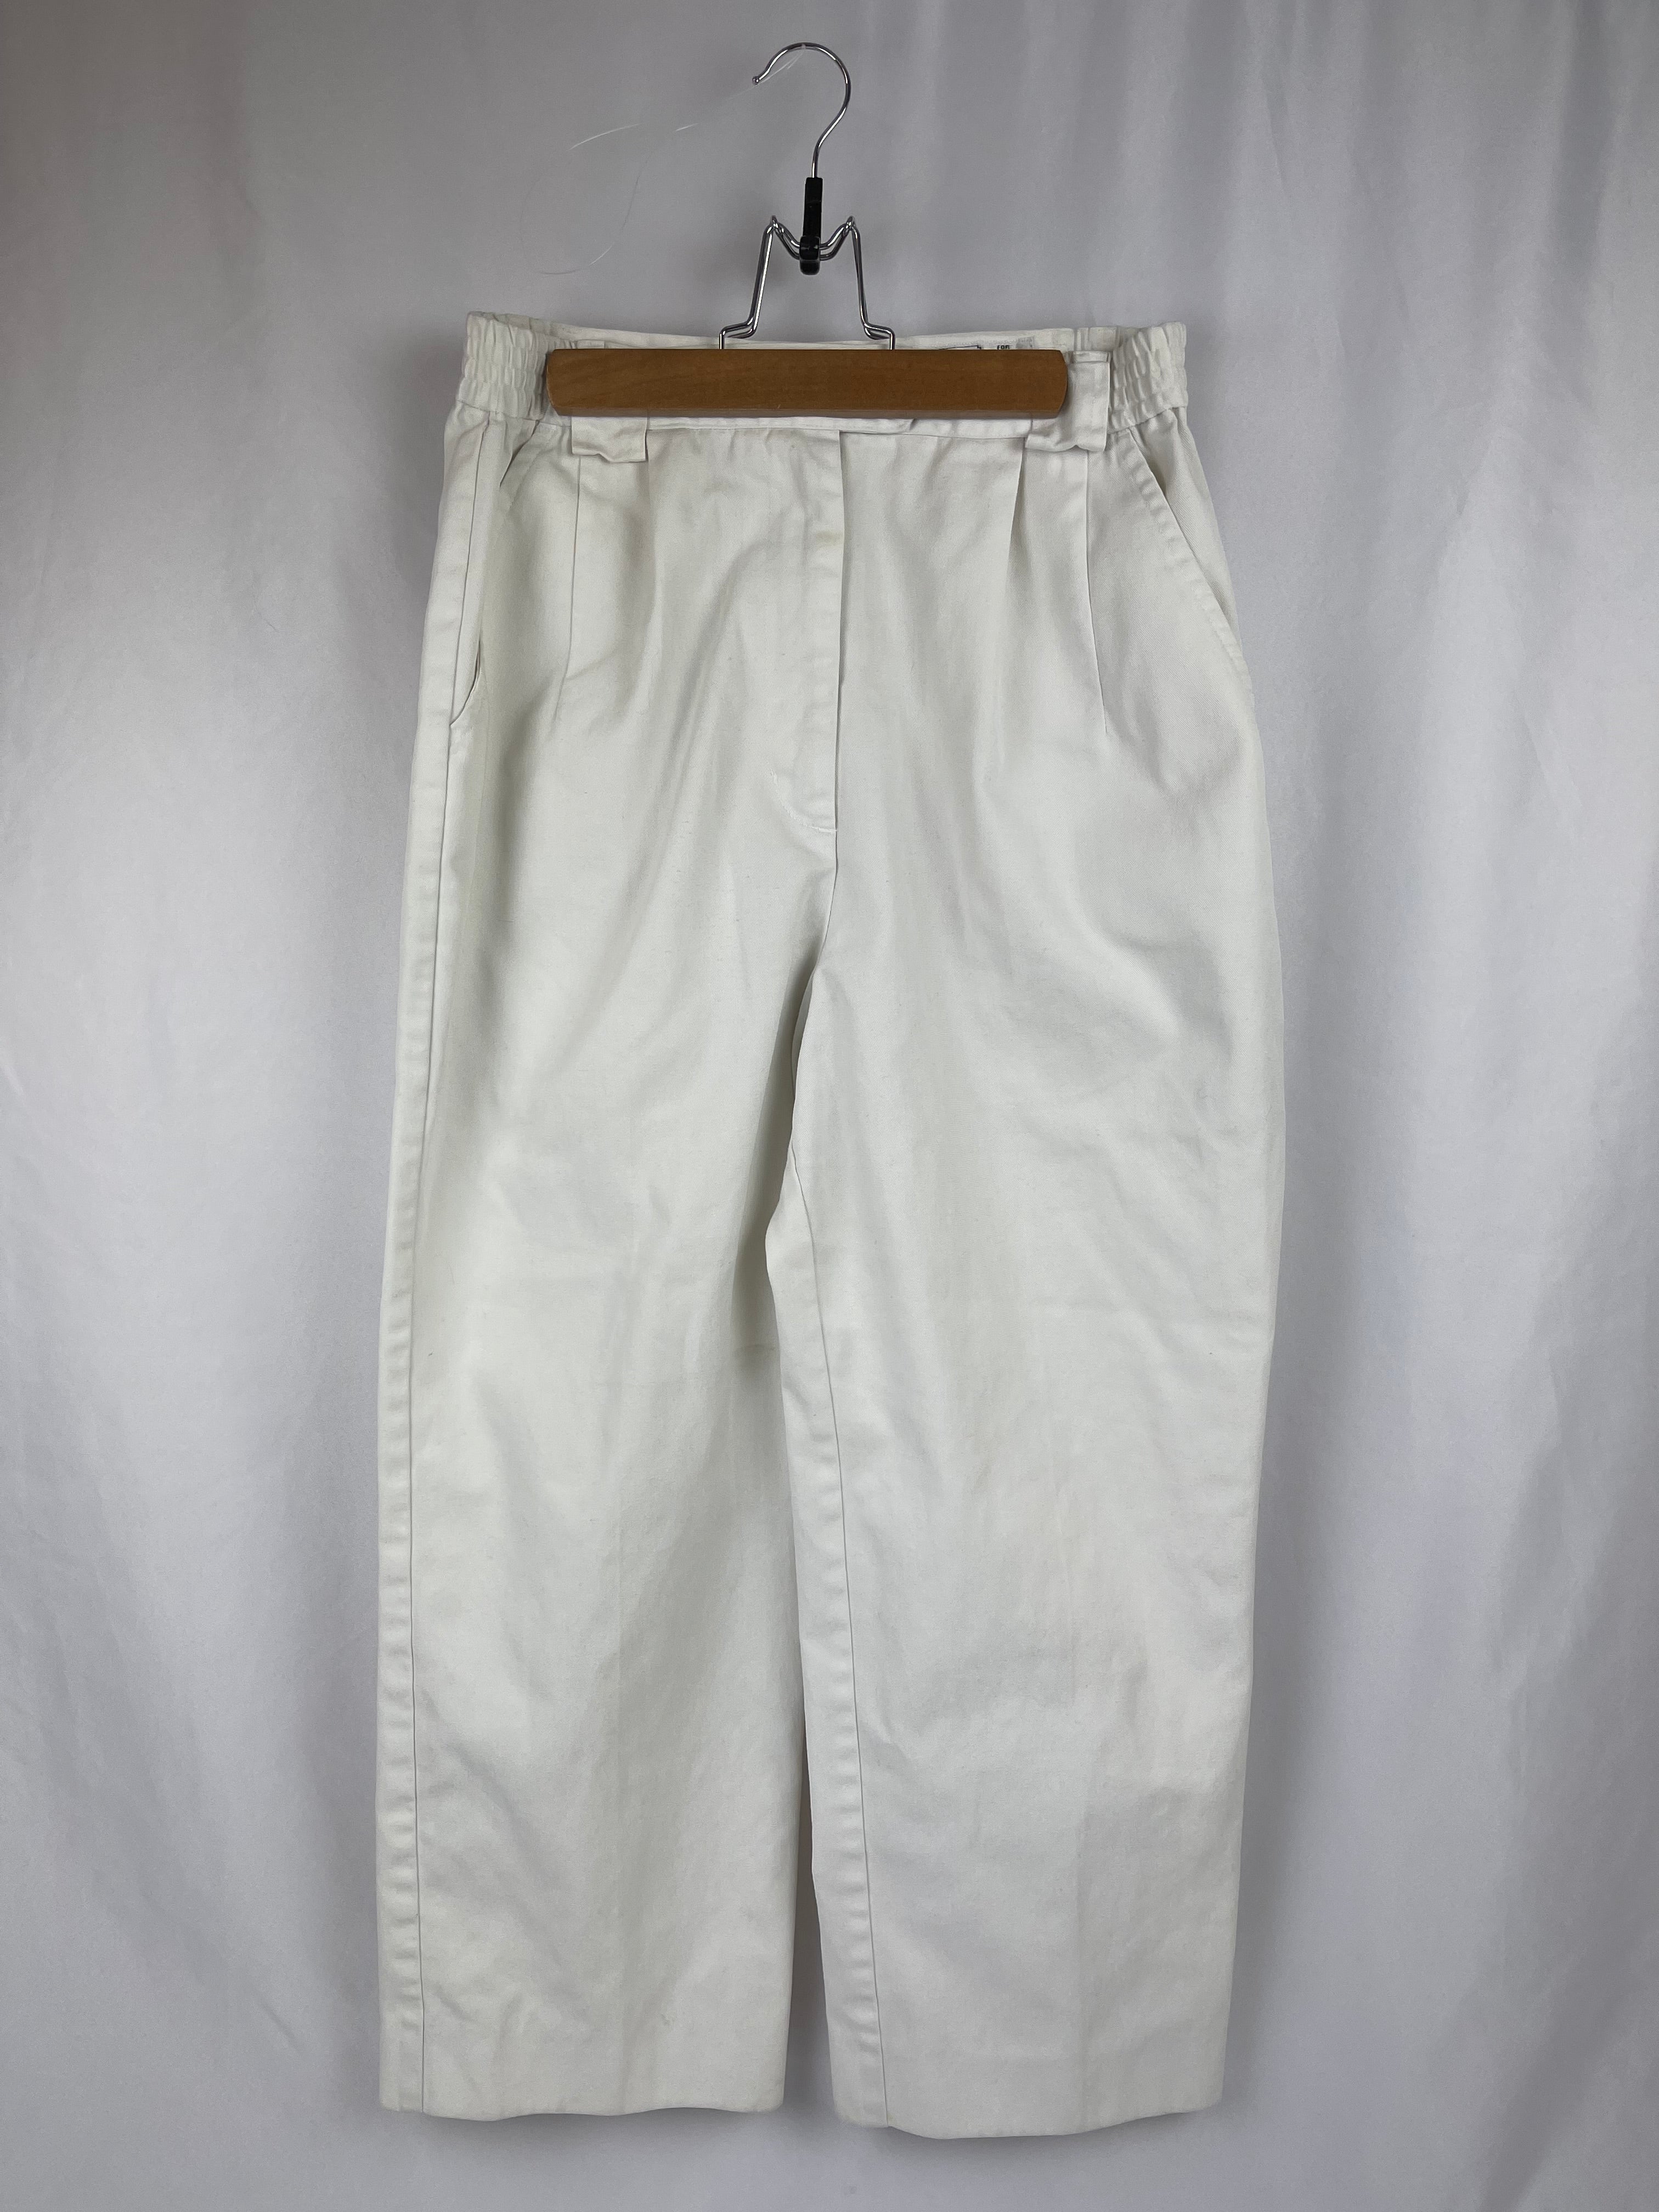 Women's White Tilley Endurables Pants Size 12 – Prince Edward